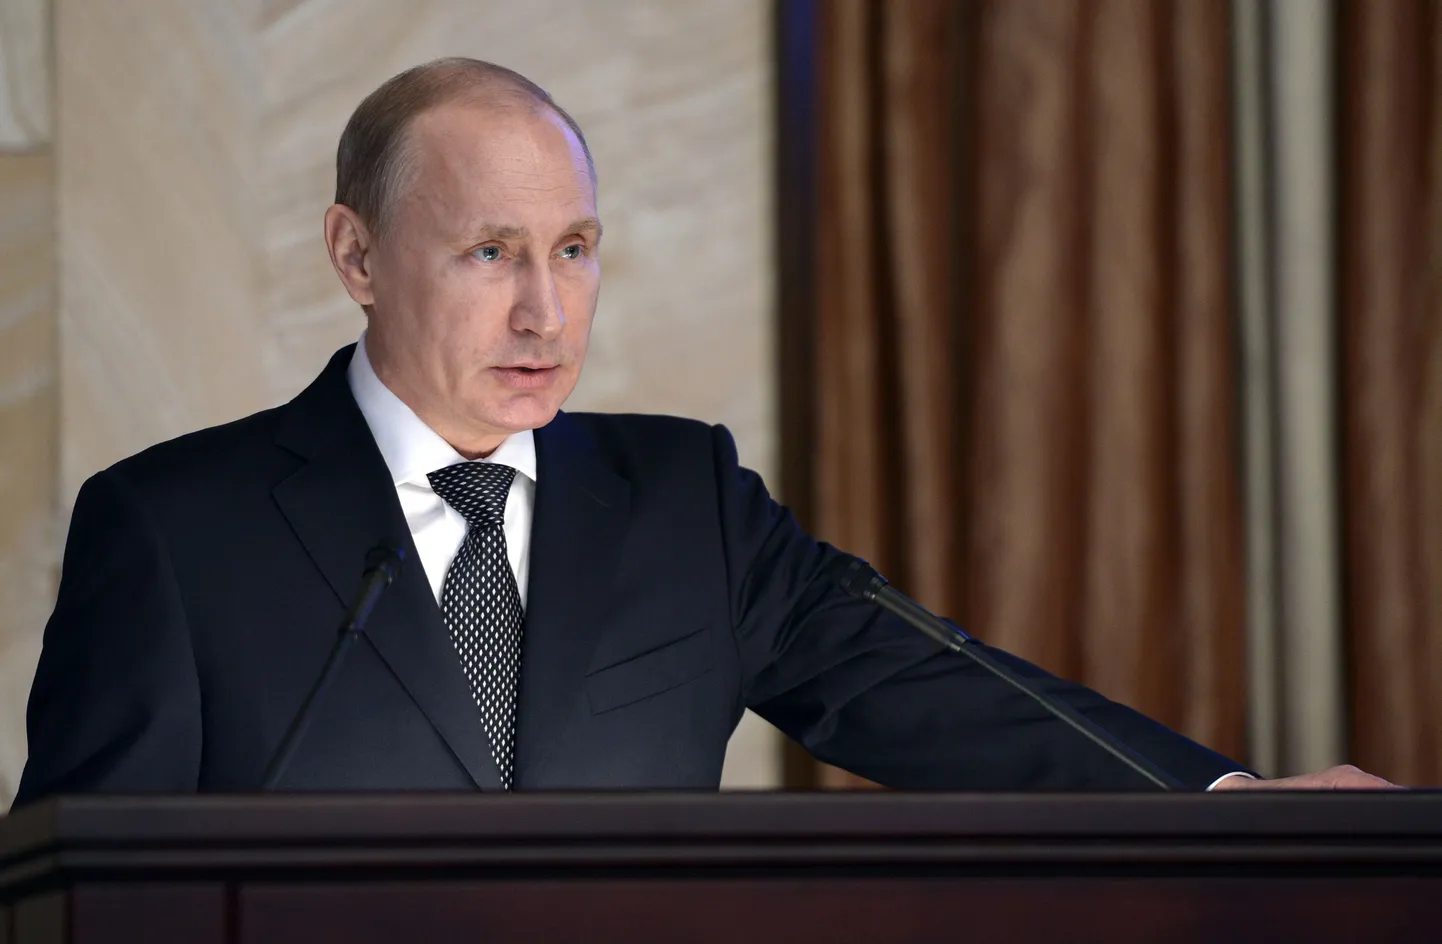 Vene president Vladimir Putin kõnelemas julgeolekutöötajate ees Moskvas.